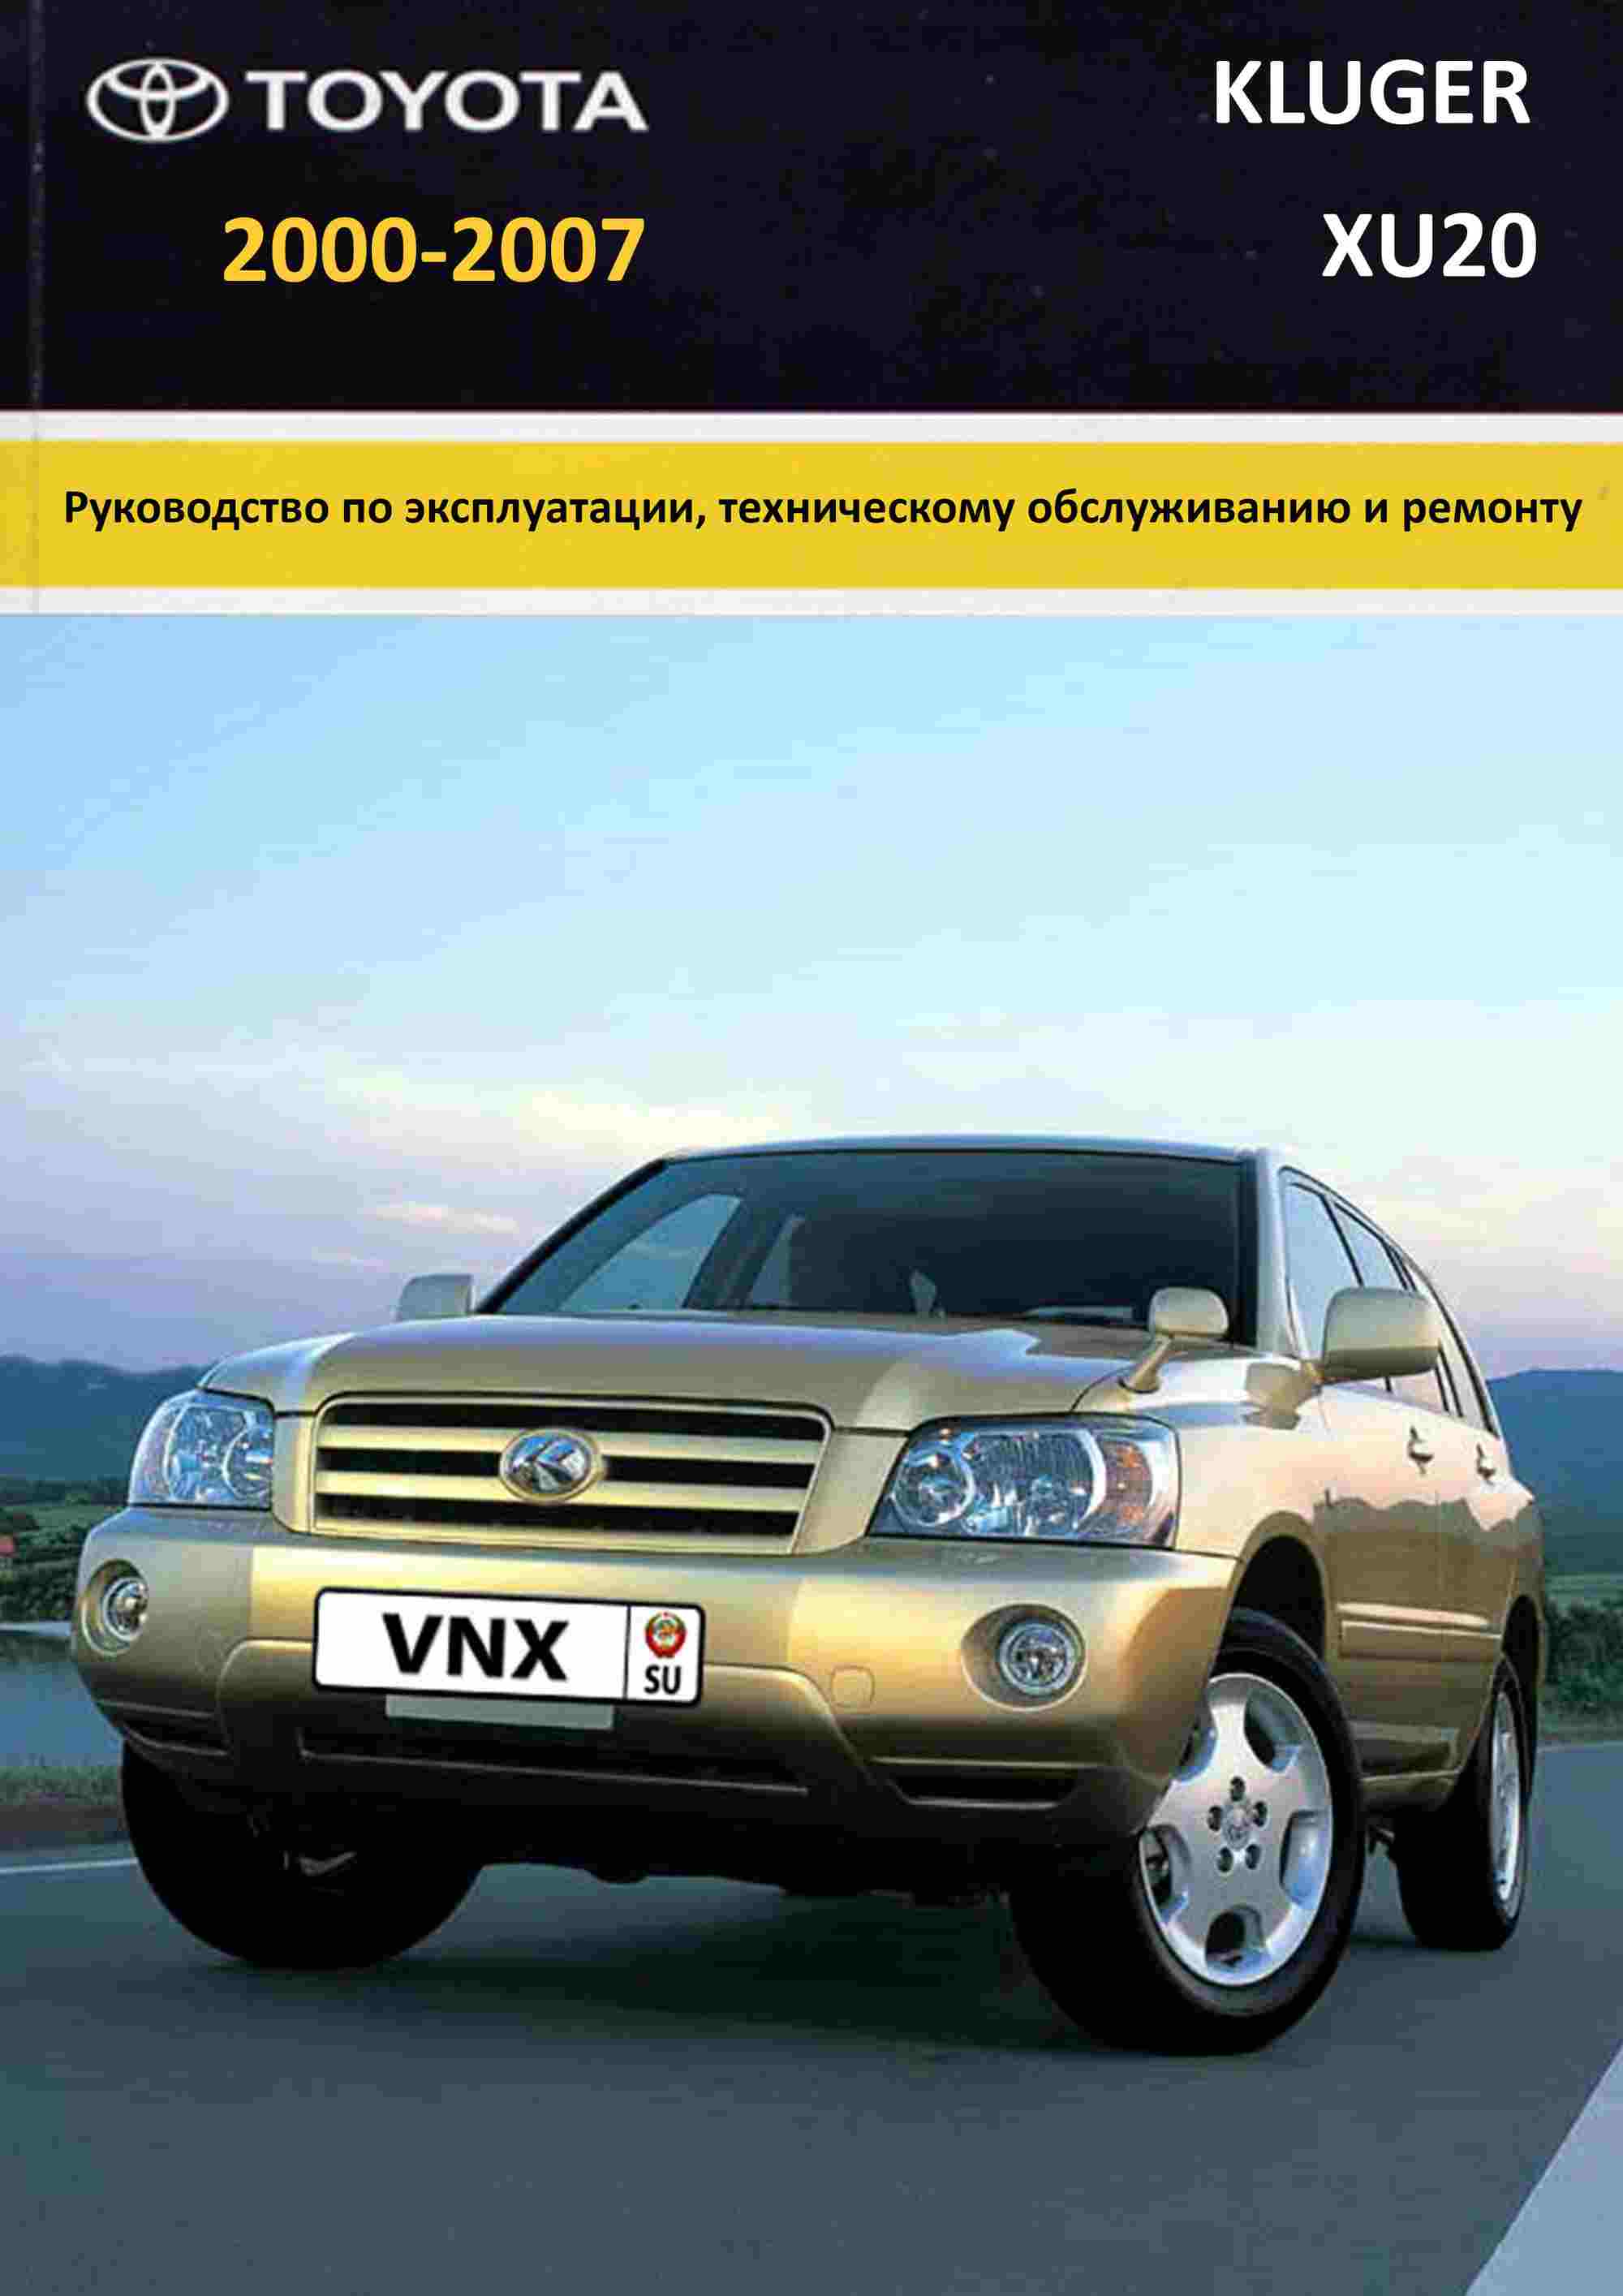 Toyota Kluger 2000-2007 Руководство по ремонту и техническому обслуживанию обложка